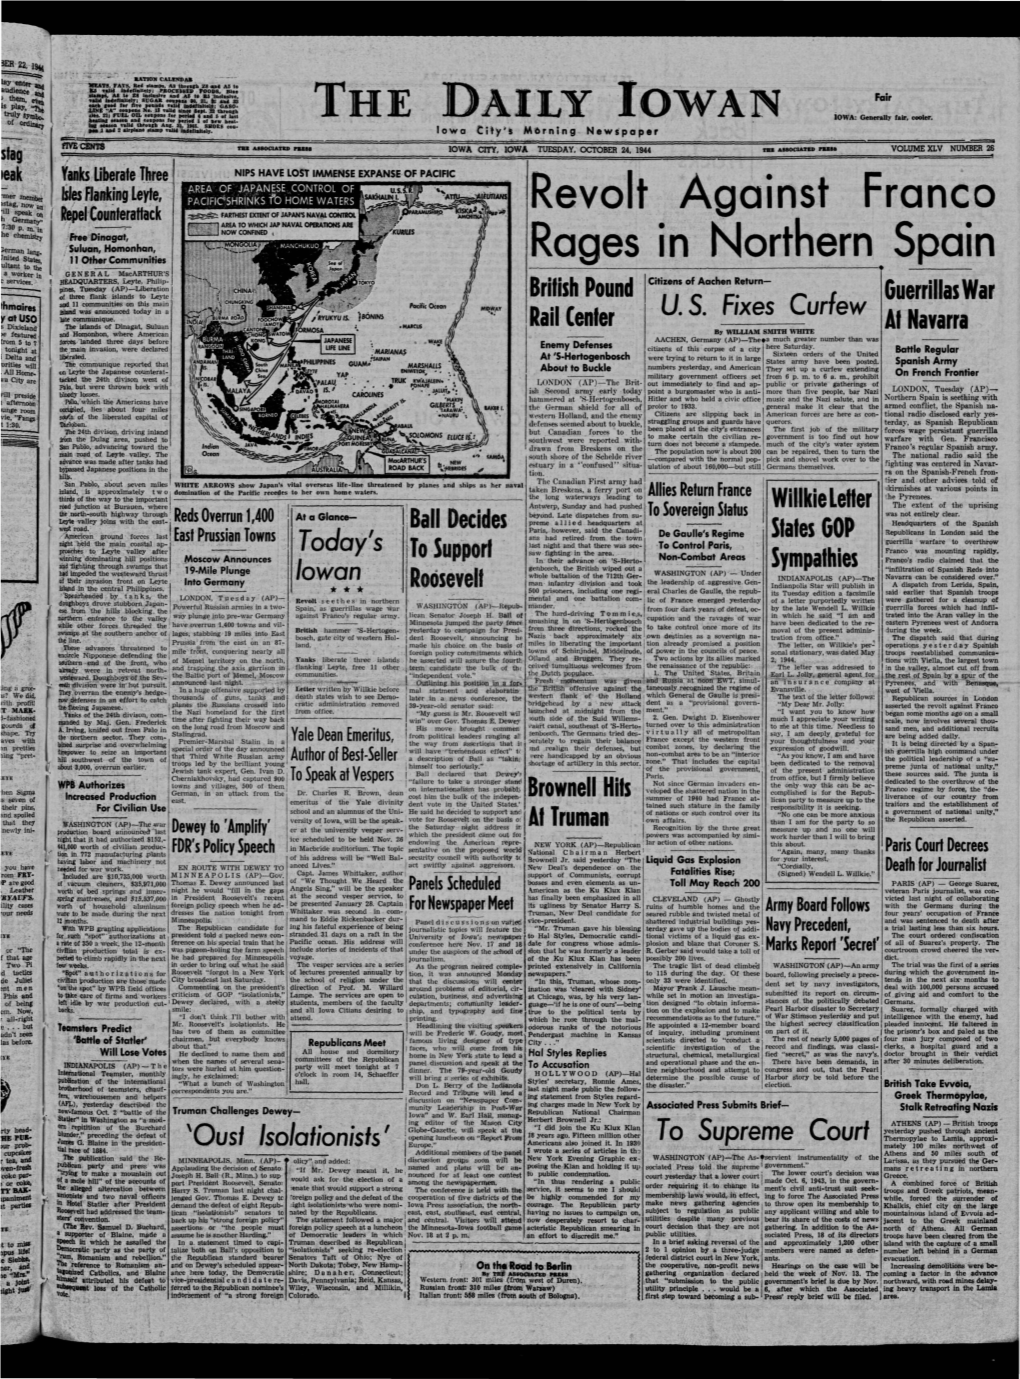 Daily Iowan (Iowa City, Iowa), 1944-10-24